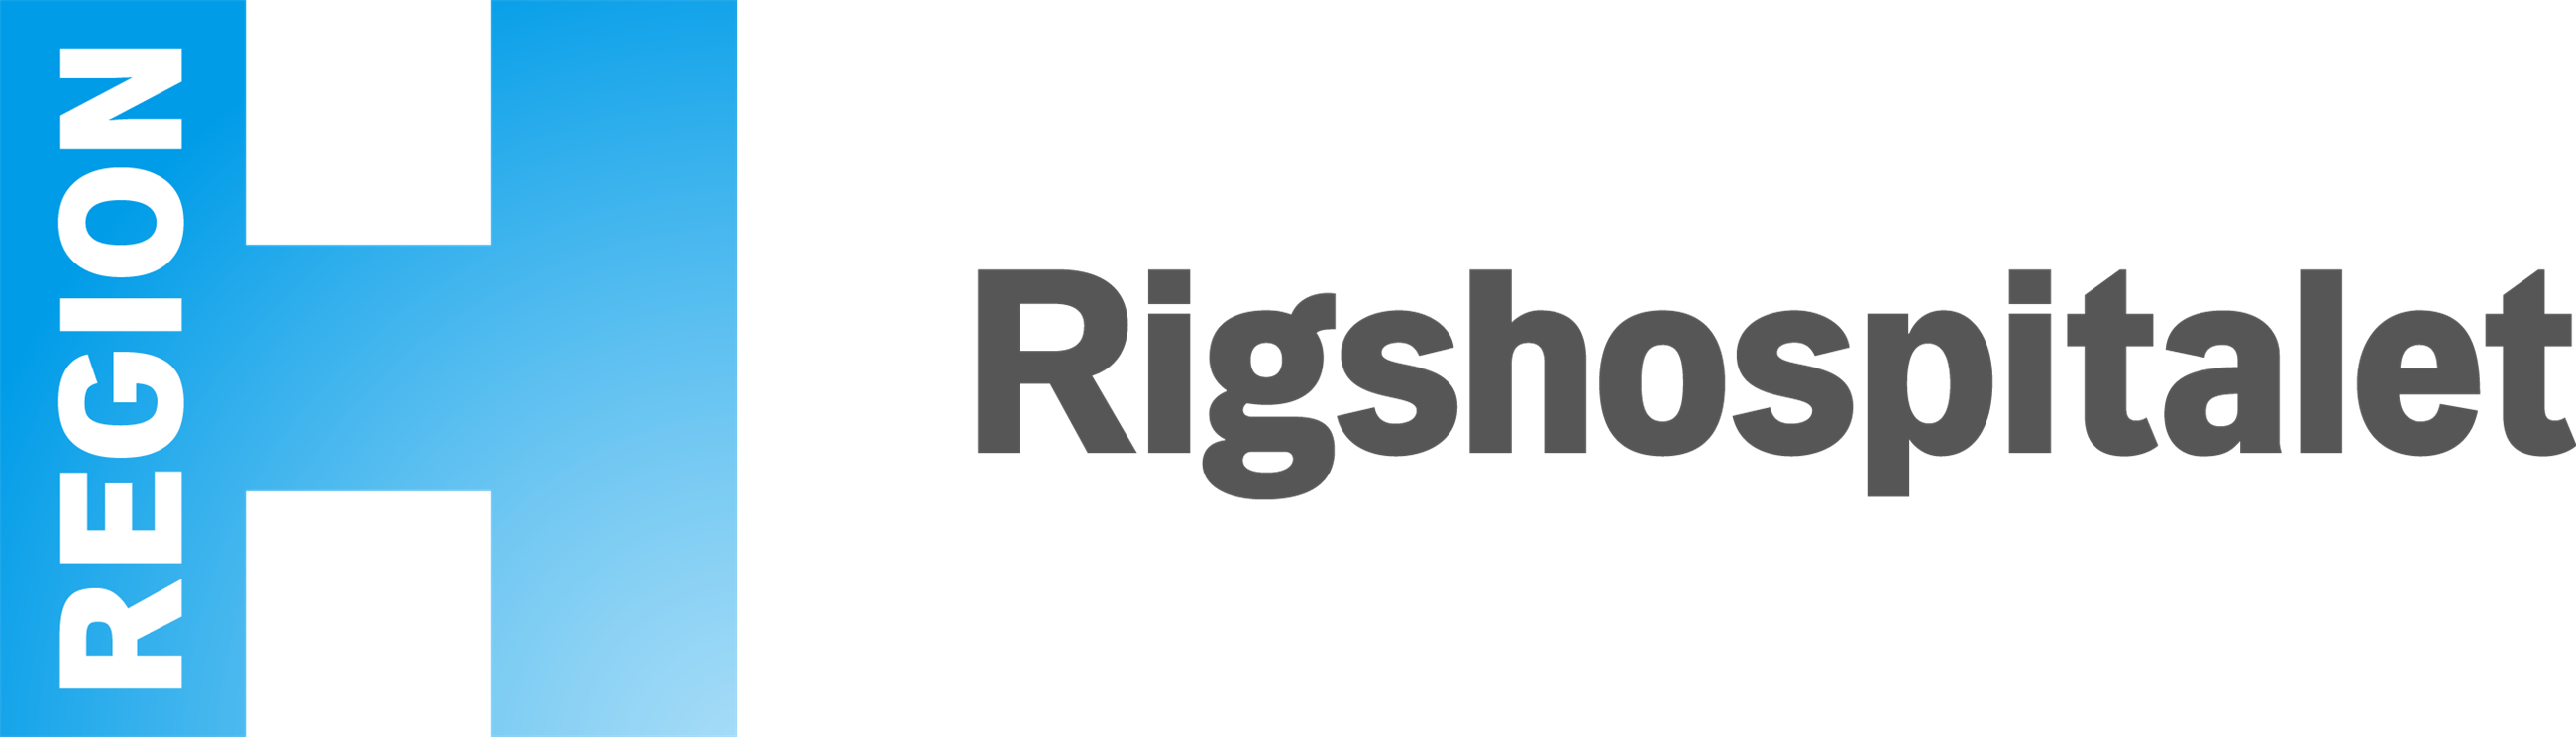 logo_rigshospitalet_png